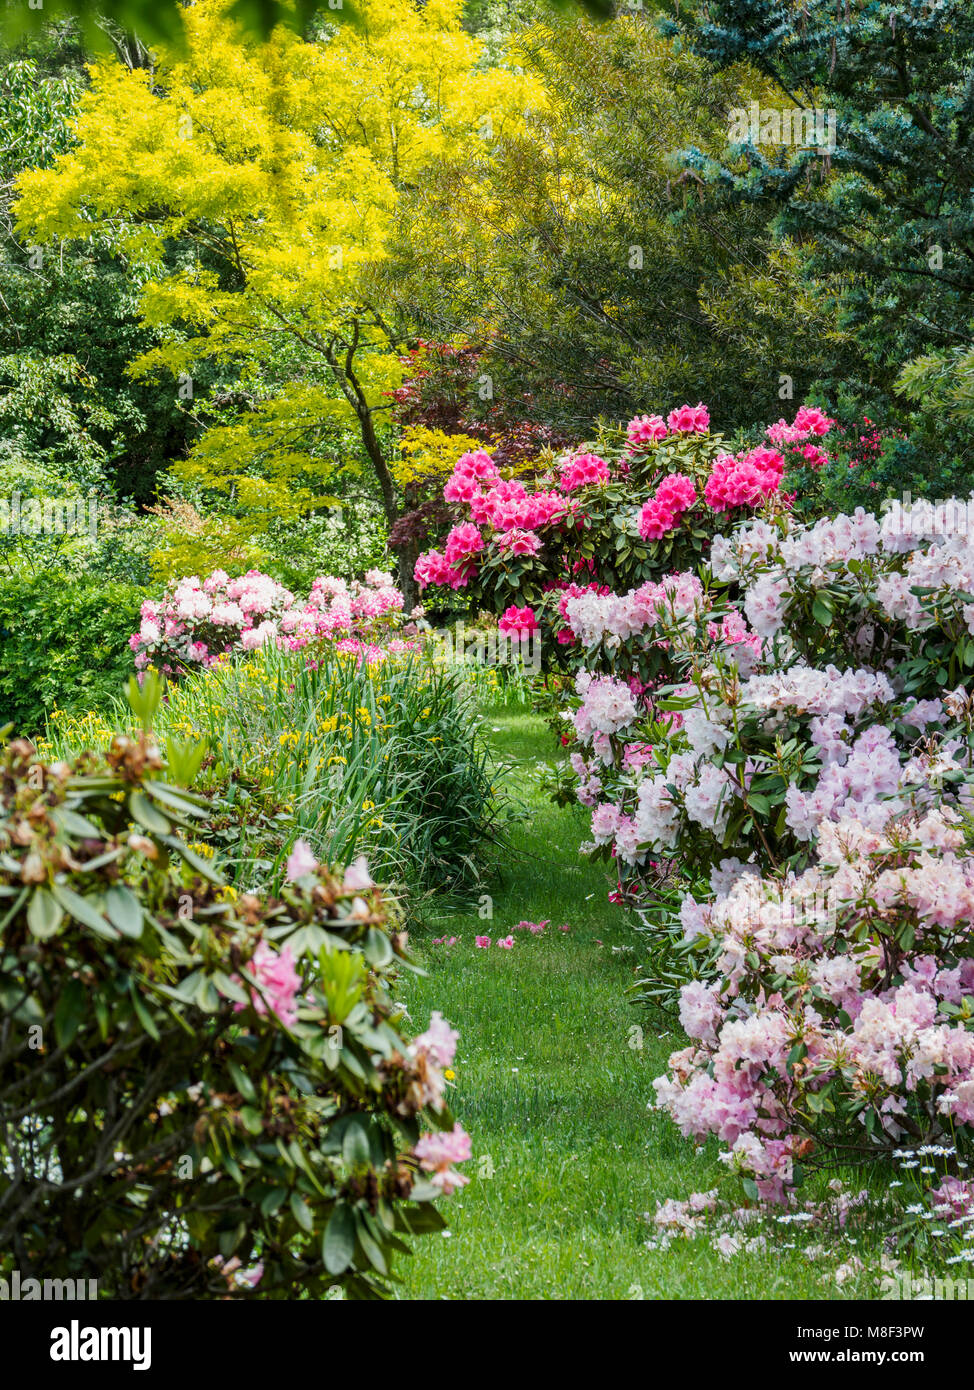 L'Australie, Nouvelle Galles du Sud, Katoomba, jardin avec arbres et buissons de rhododendrons vert Banque D'Images